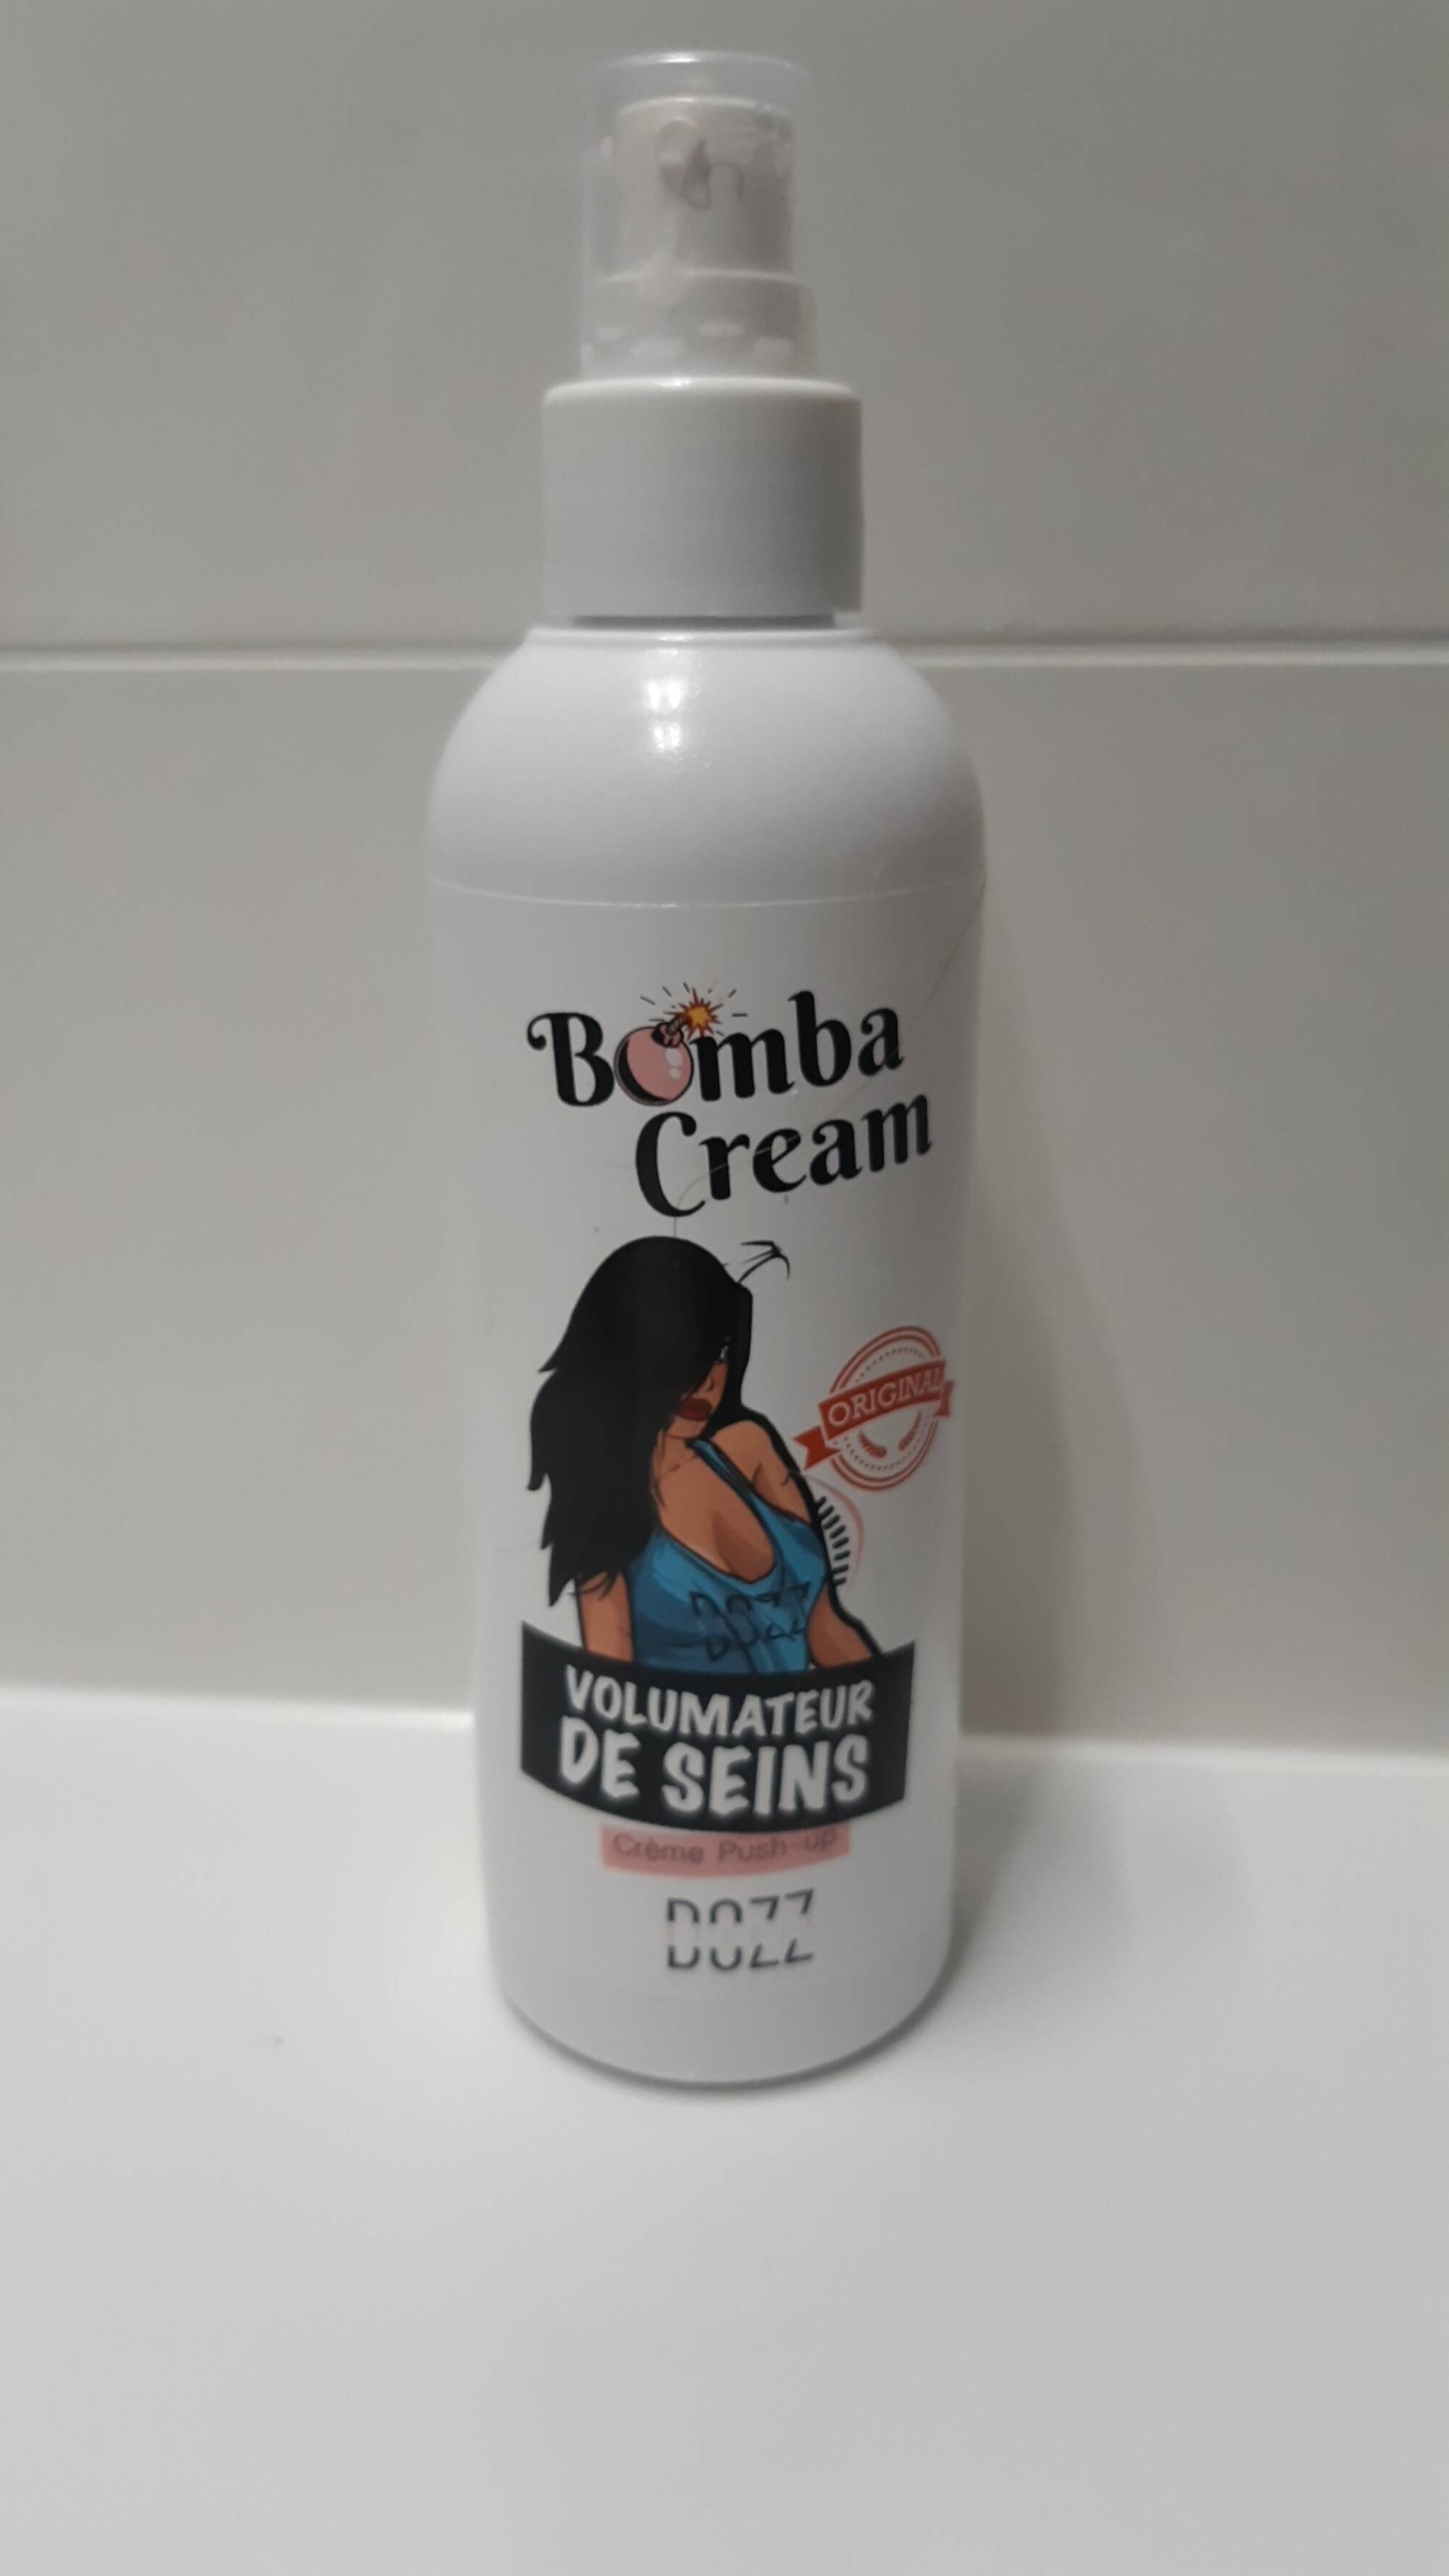 DOZZ BEAUTY - Bomba cream - Volumateur de seins